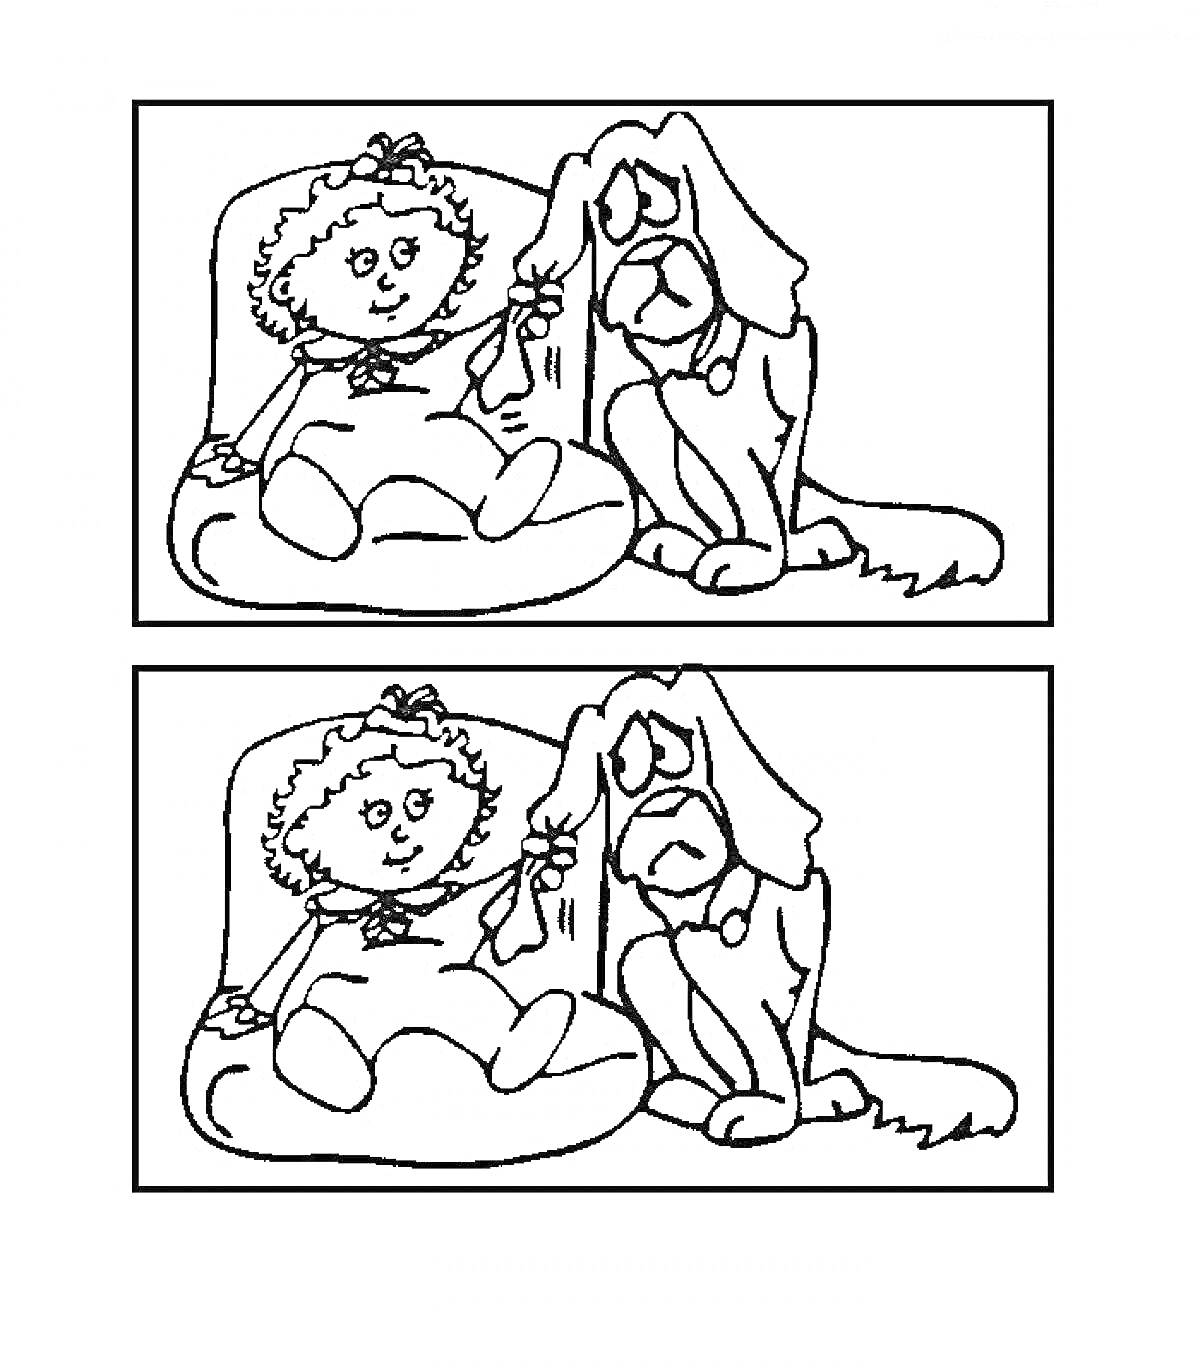 Раскраска - Найди отличия: девочка на подушке с бантом в волосах, плюшевый щенок с длинными ушами